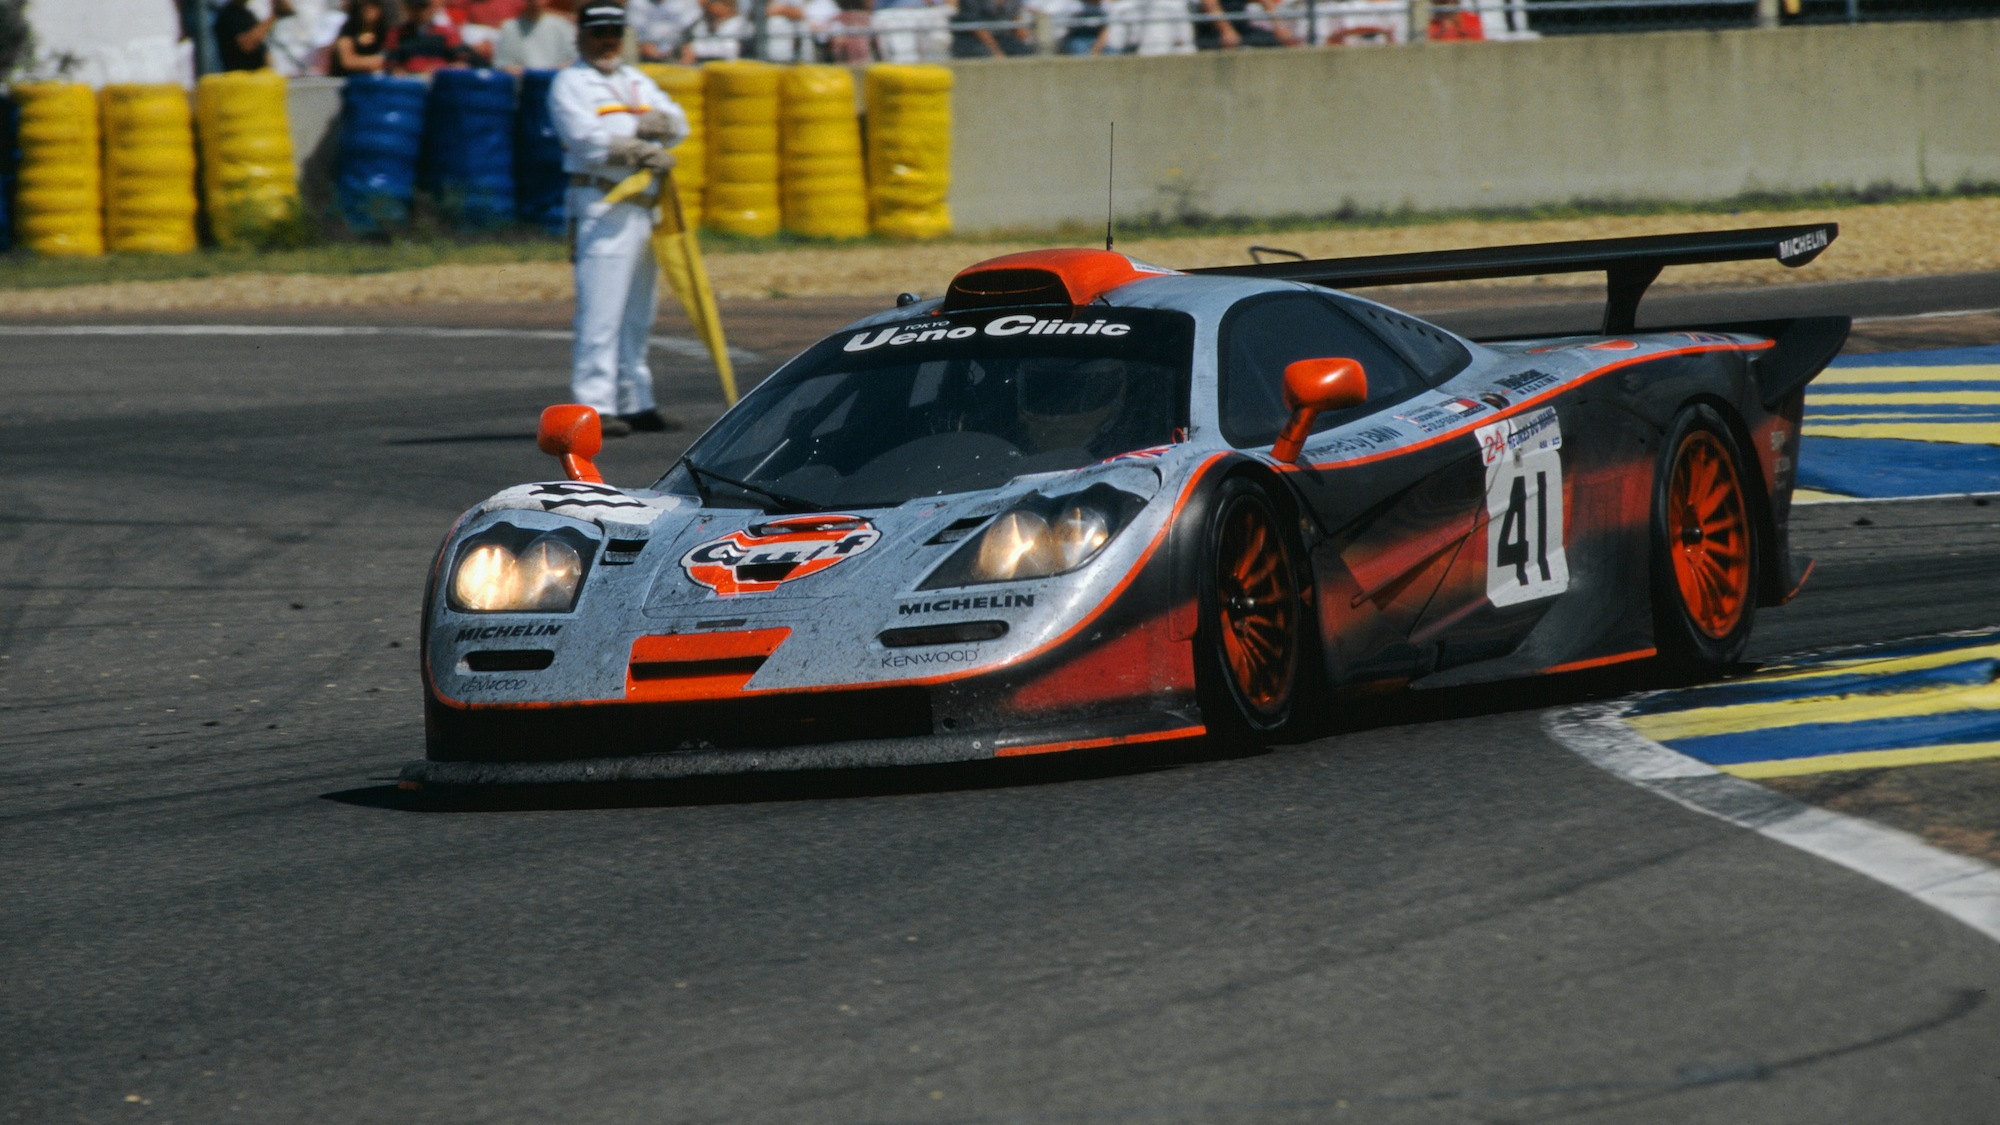 McLaren Le Mans hertiage race cars